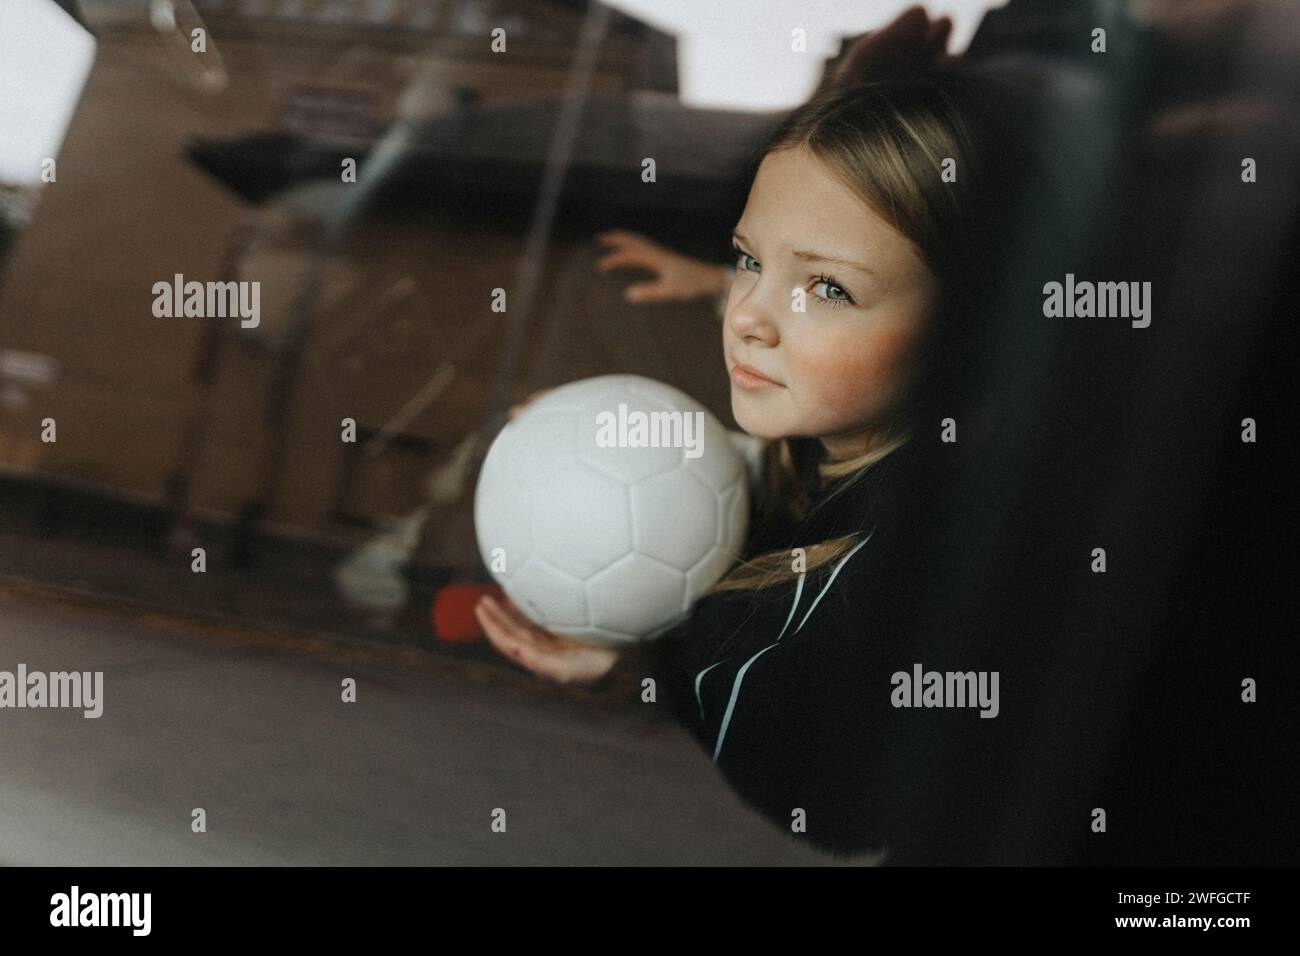 Besinnliches Mädchen mit Fußball durch ein Glas Auto gesehen Stockfoto